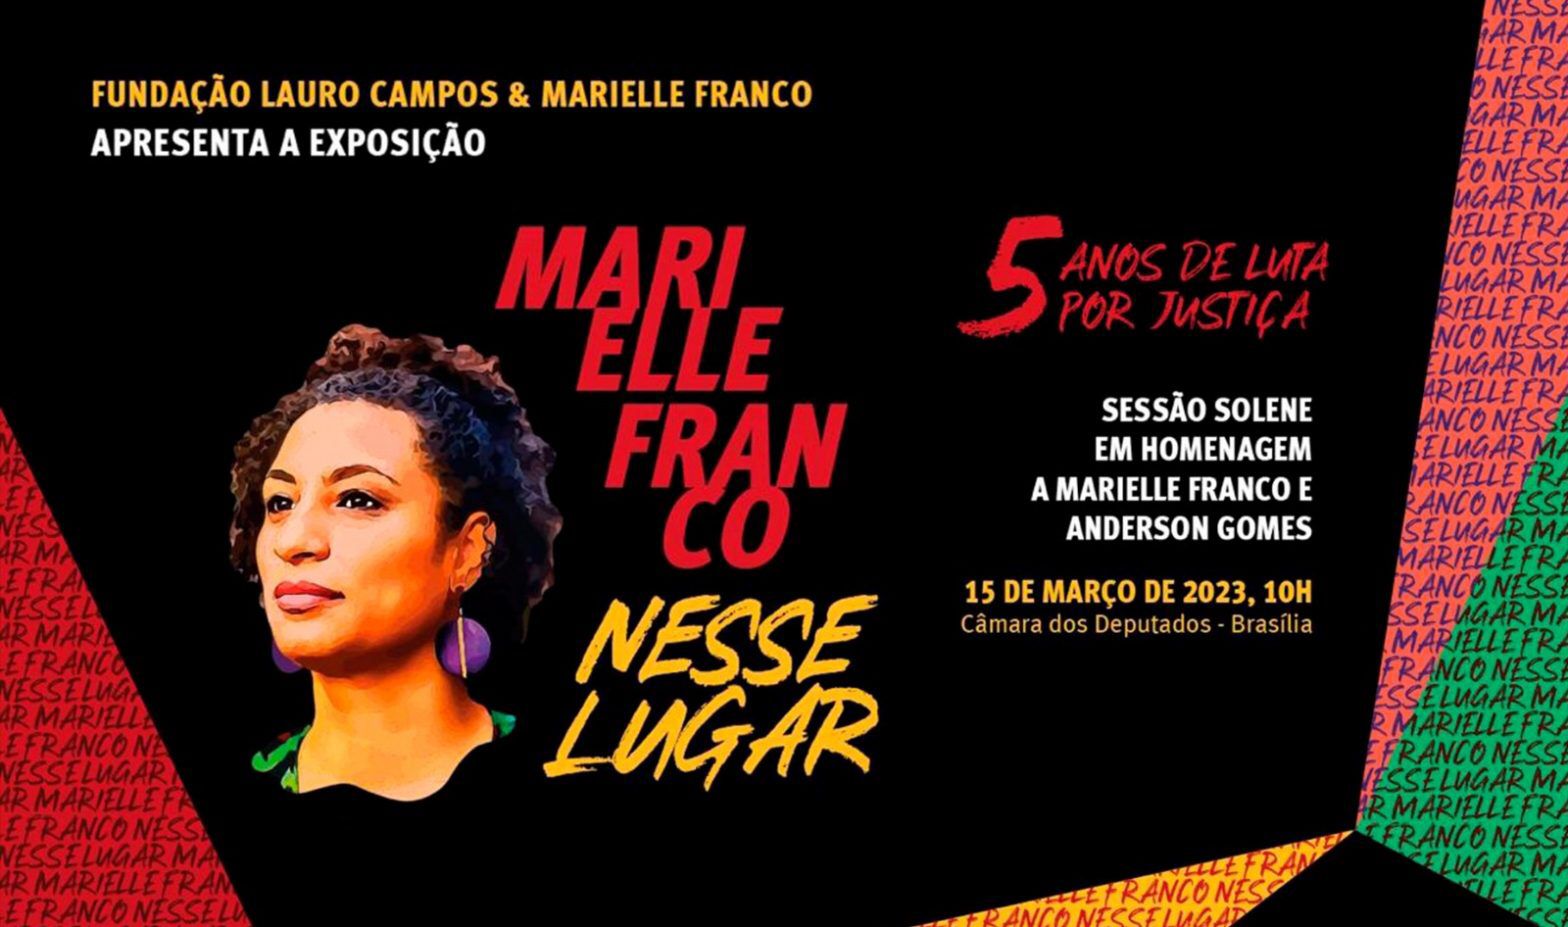 Marielle Franco: Câmara Federal recebe nesta terça-feira (14) exposição sobre o assassinato, legado social e trajetória política de Marielle